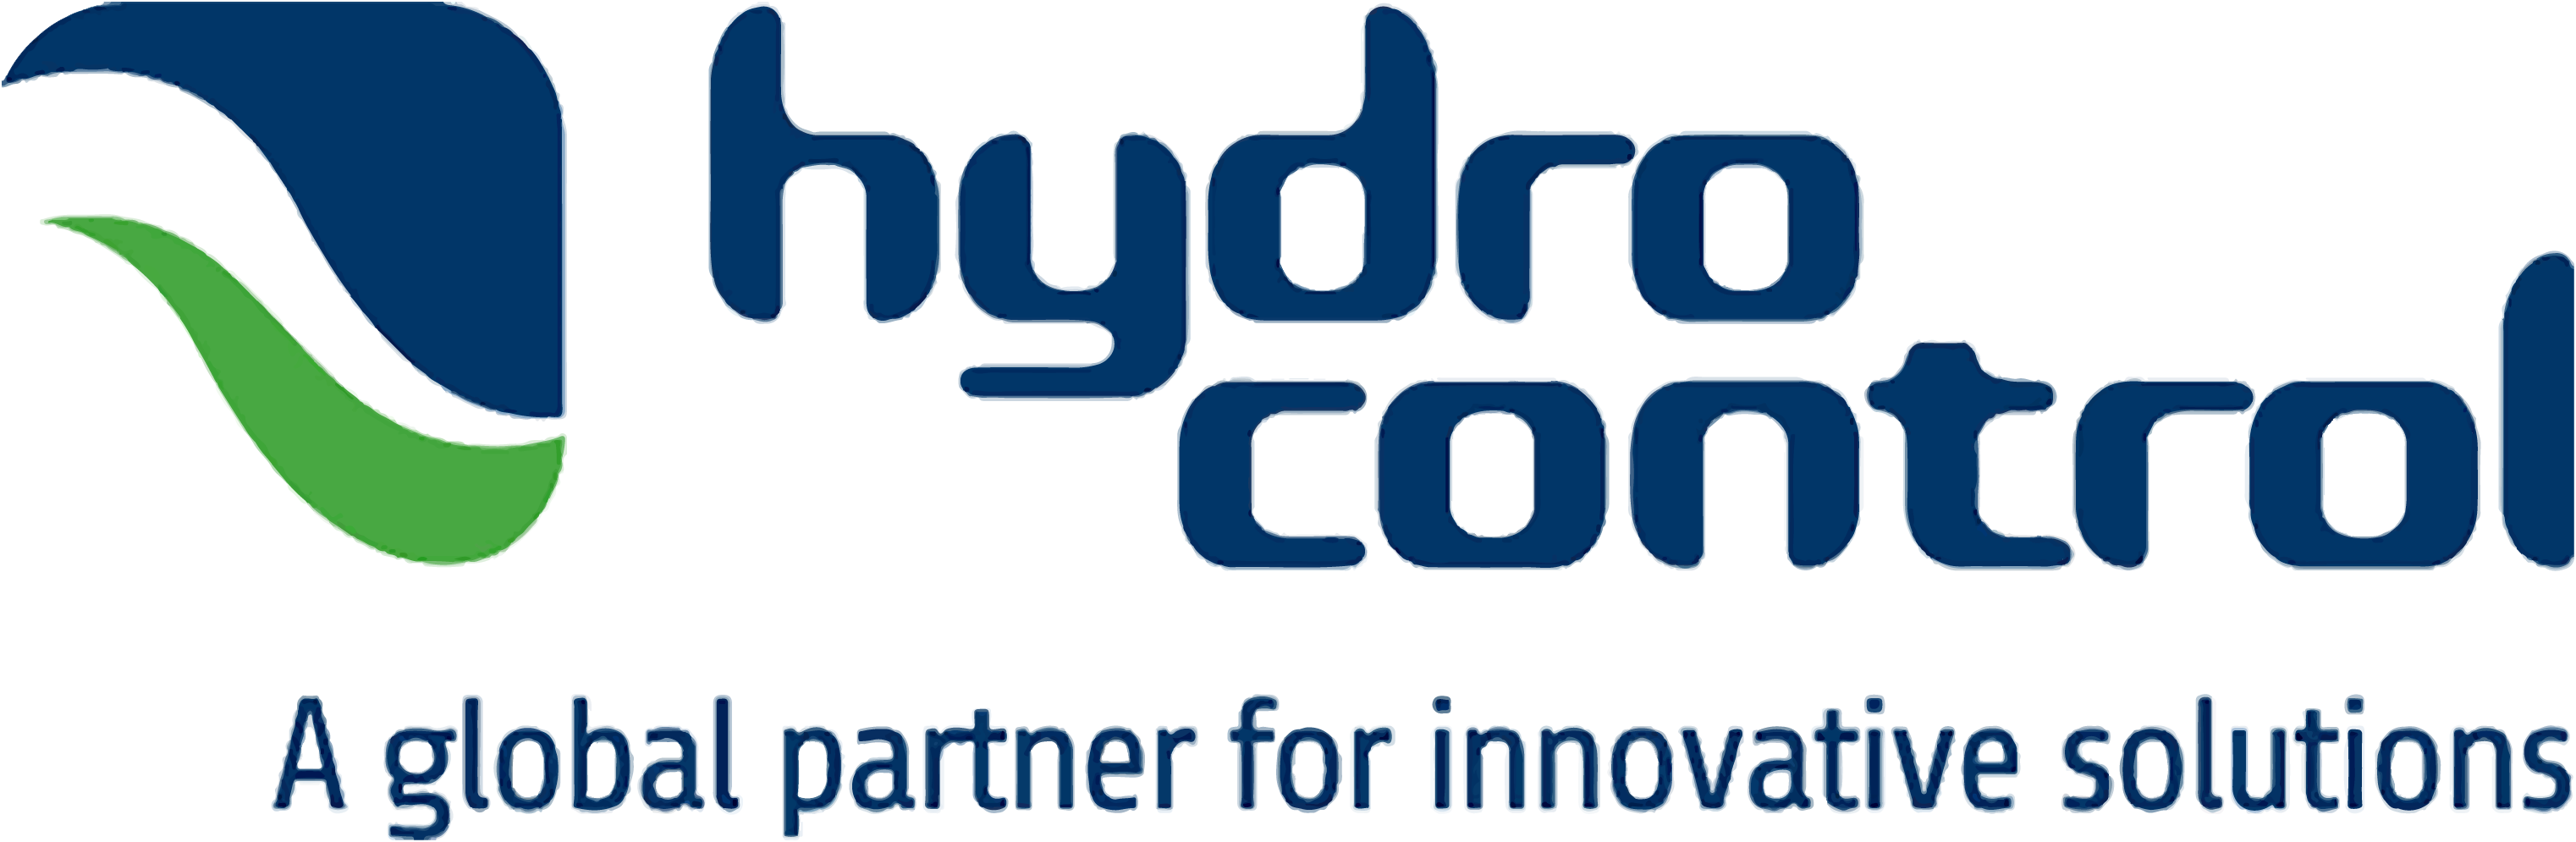 Logo Hydro control